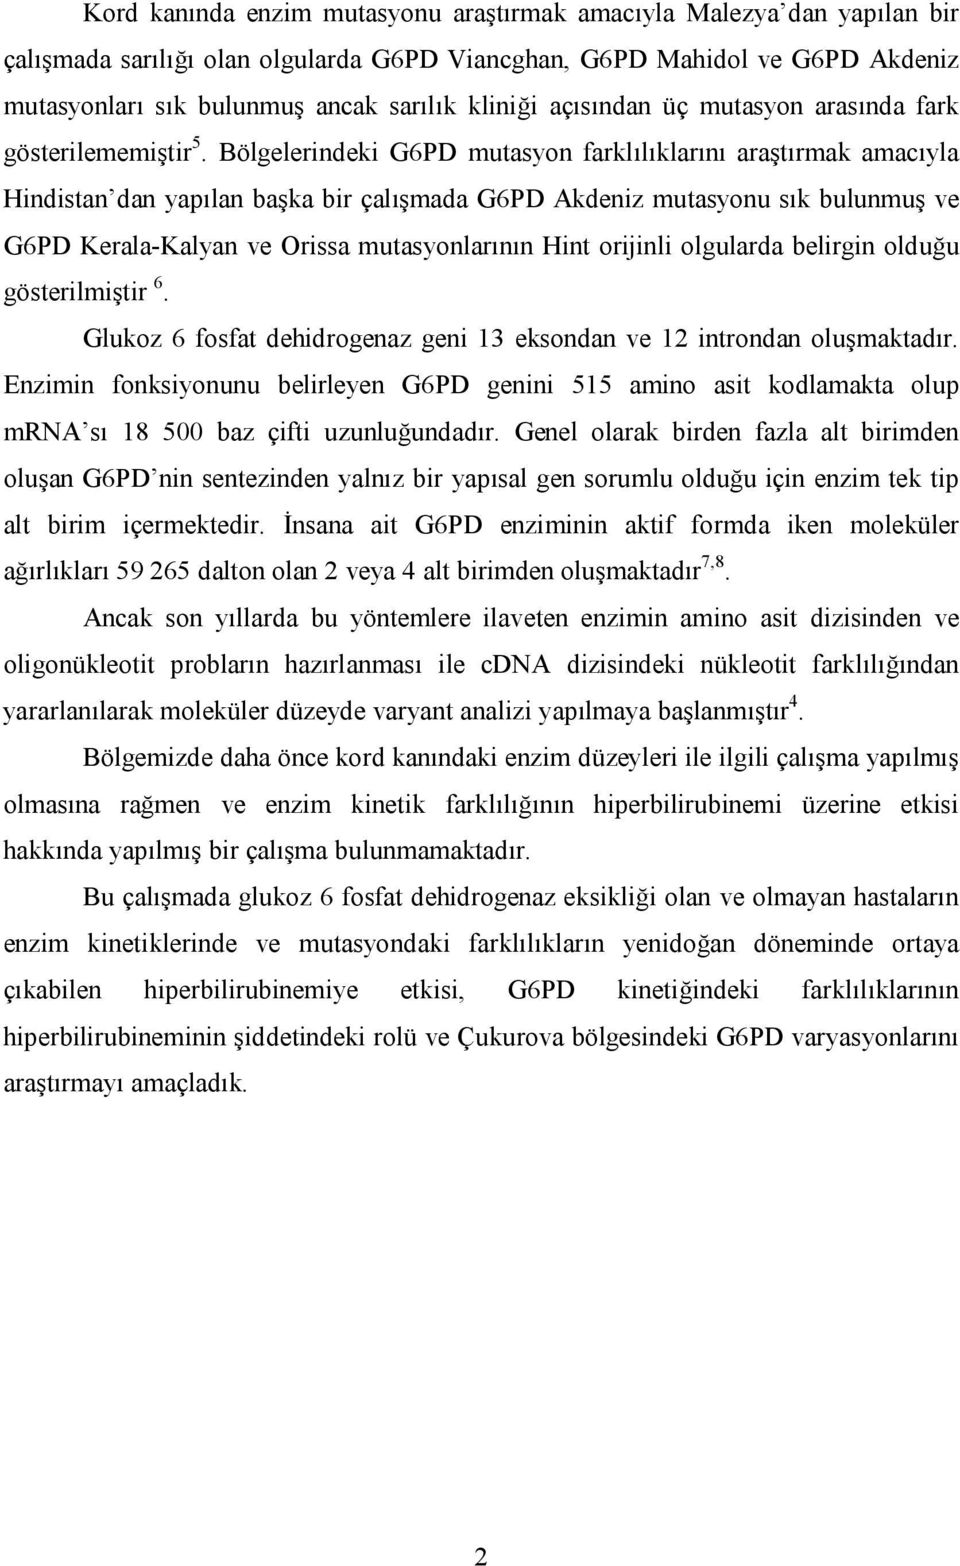 Bölgelerindeki G6PD mutasyon farklılıklarını araştırmak amacıyla Hindistan dan yapılan başka bir çalışmada G6PD Akdeniz mutasyonu sık bulunmuş ve G6PD Kerala-Kalyan ve Orissa mutasyonlarının Hint